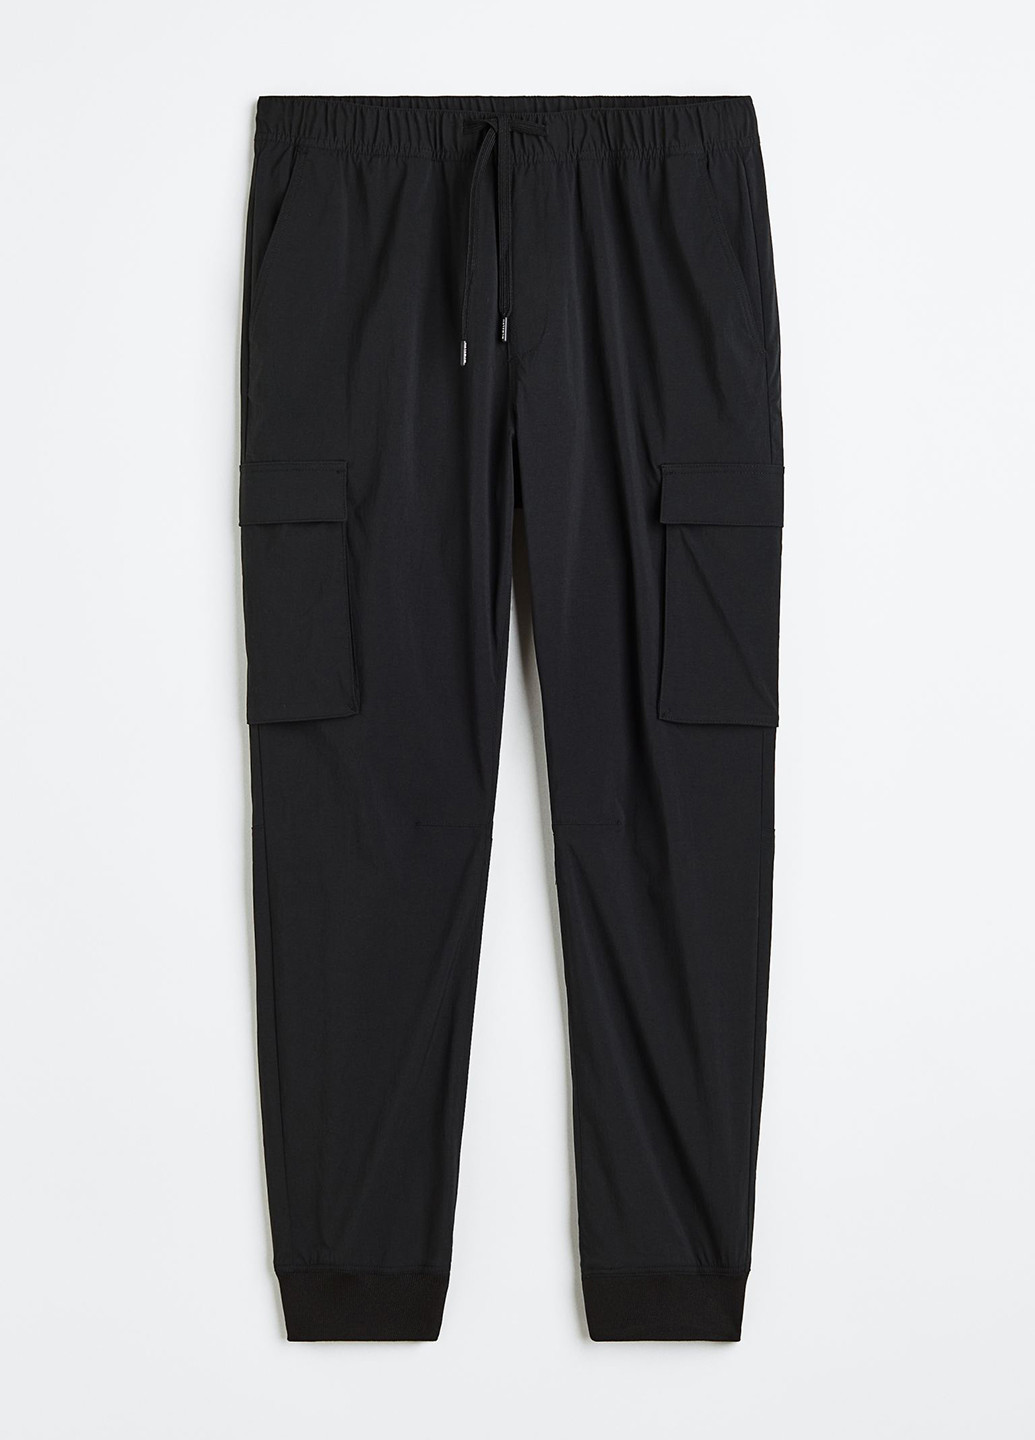 Черные спортивные демисезонные джоггеры, карго брюки H&M